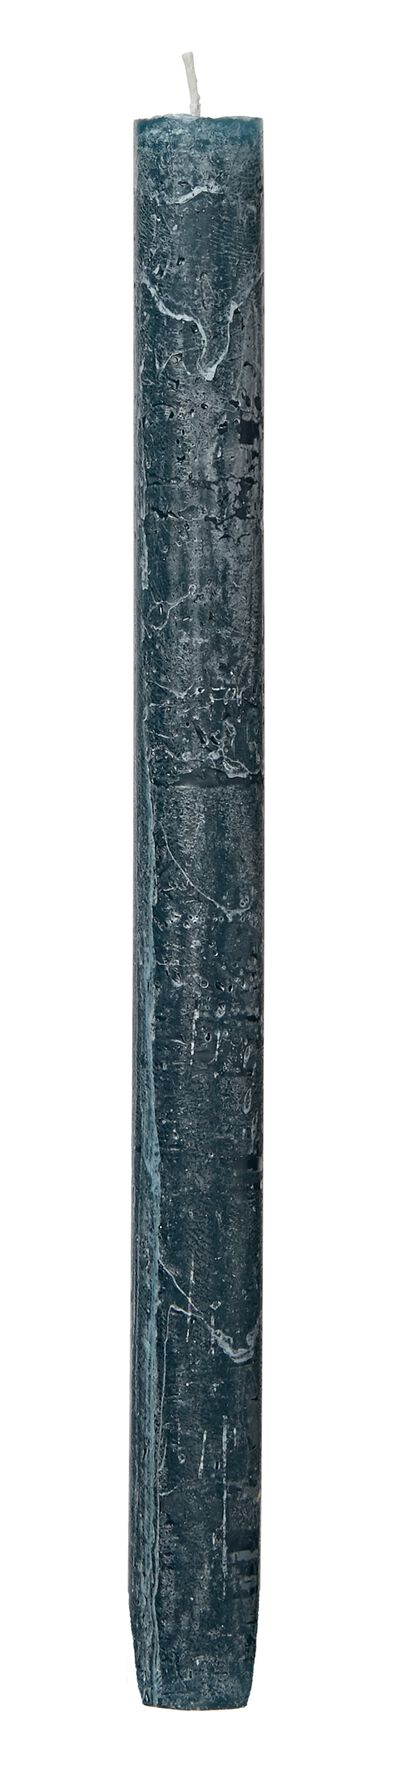 rustieke huidhoudkaars 2 x 26.5 cm donkergroen 2.2 x 27 - 13501876 - HEMA